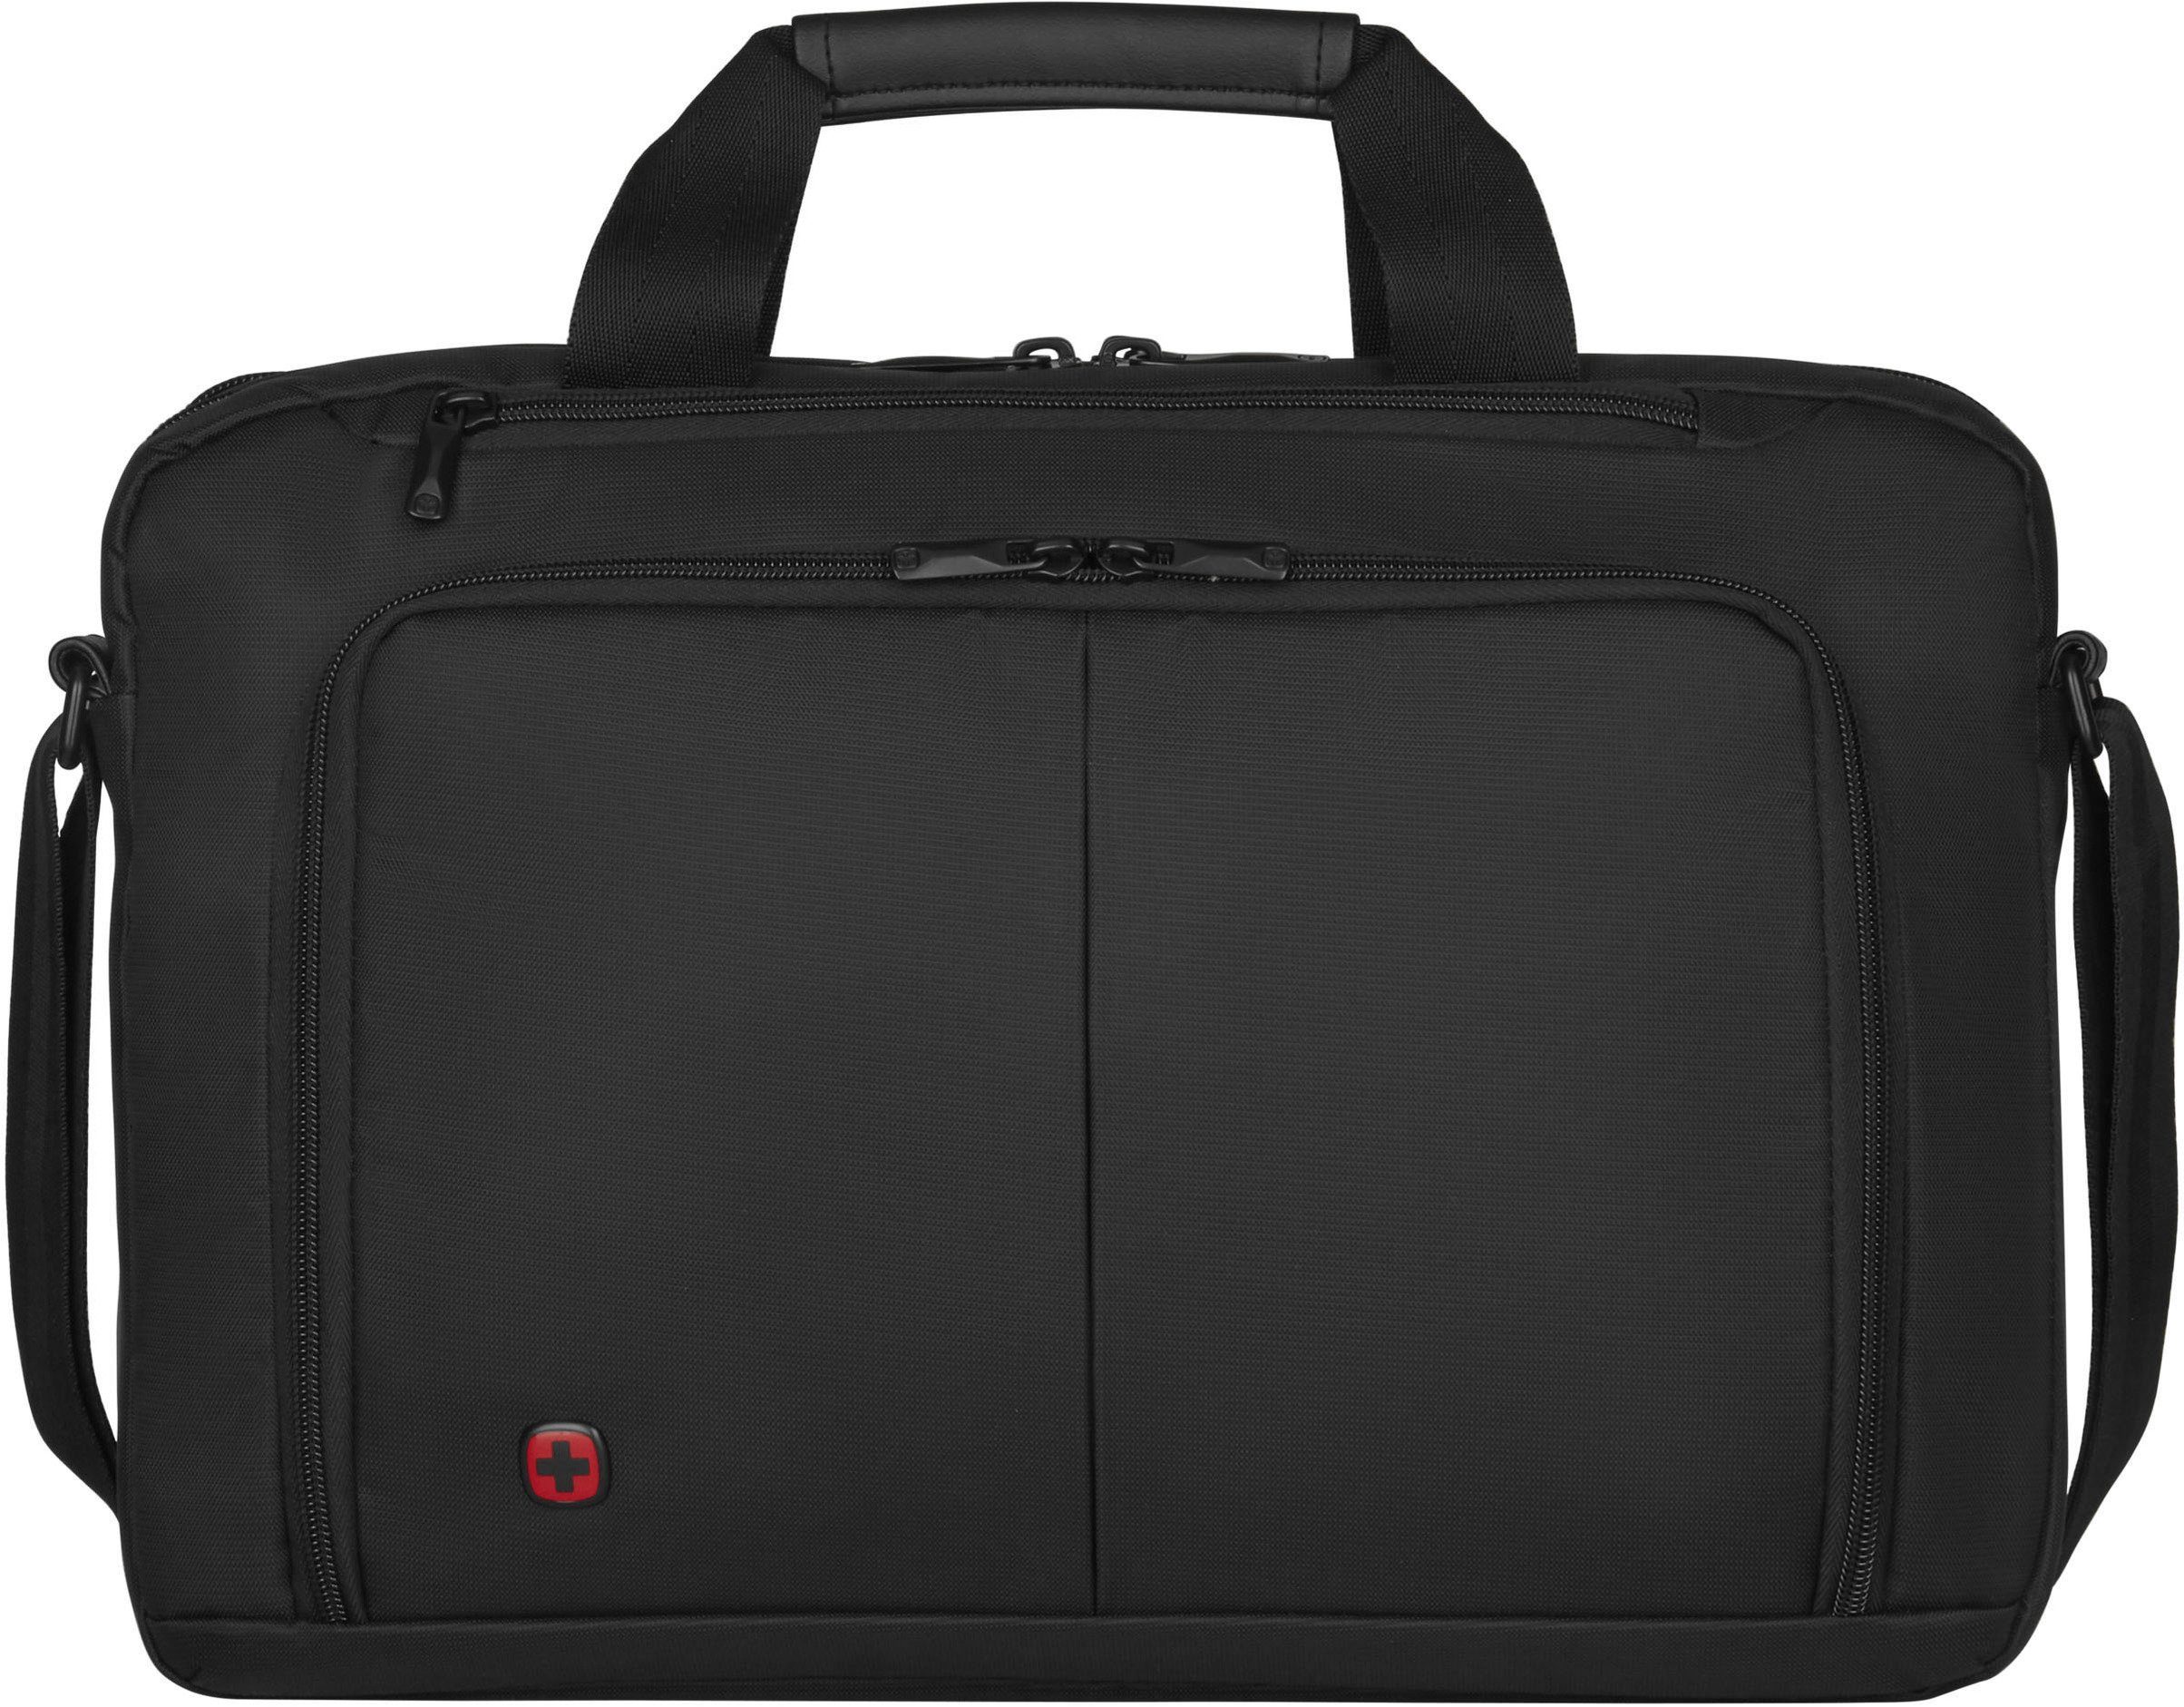 Wenger Laptoptasche Source, schwarz, mit 16-Zoll Laptopfach und zusätzlichem 10-Zoll Tabletfach | Businesstaschen